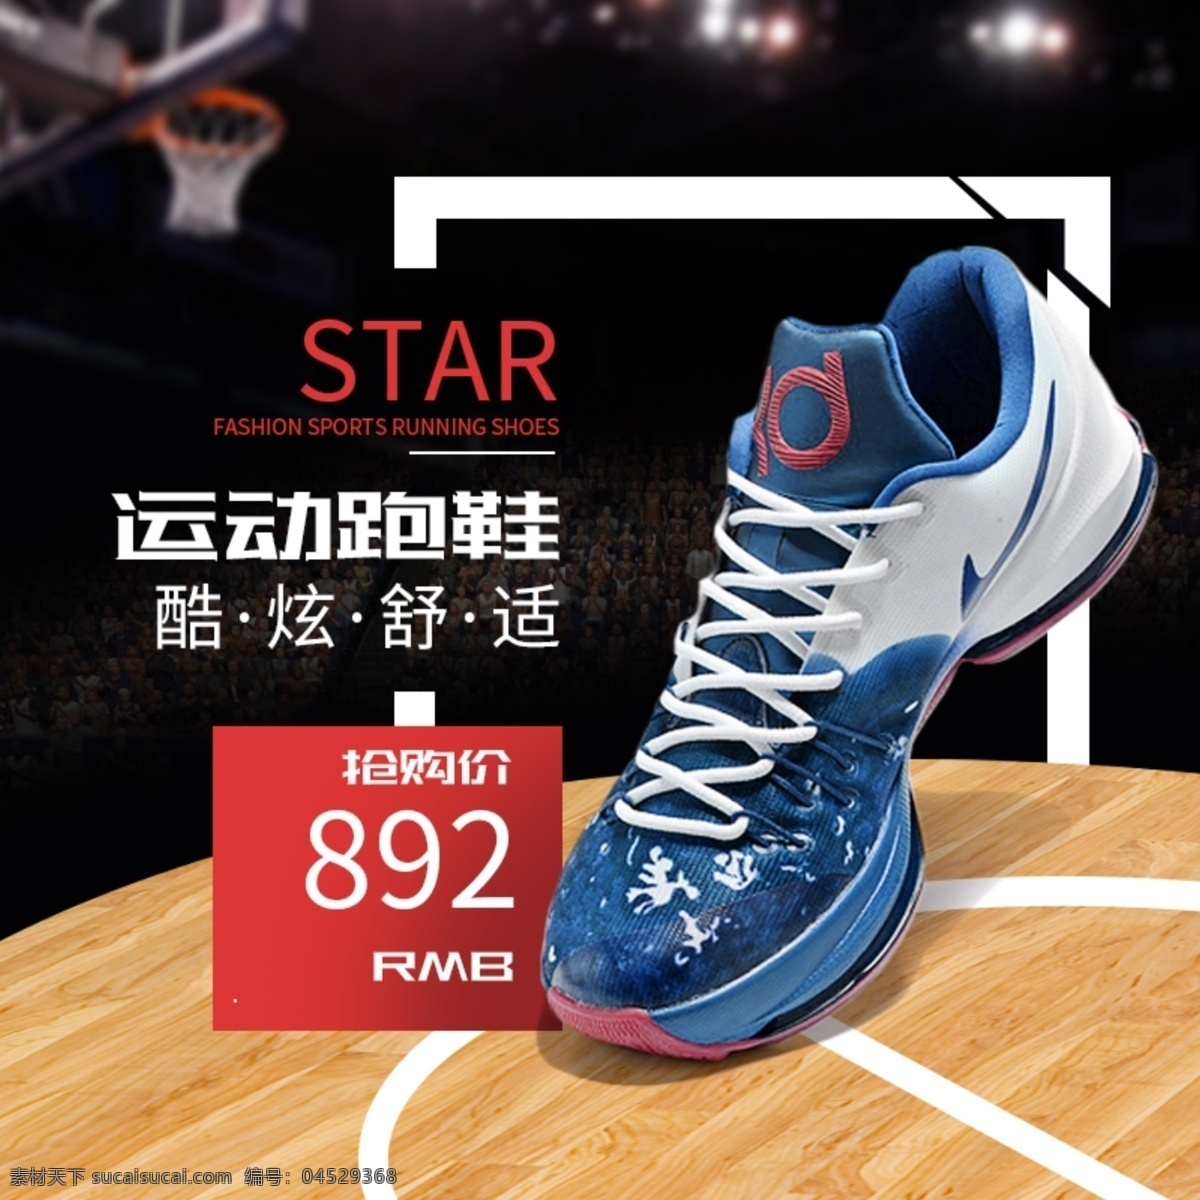 电商 淘宝 天猫 篮球 运动鞋 子 促销活动 主 图 直通 主图 鞋子 直通车 促销